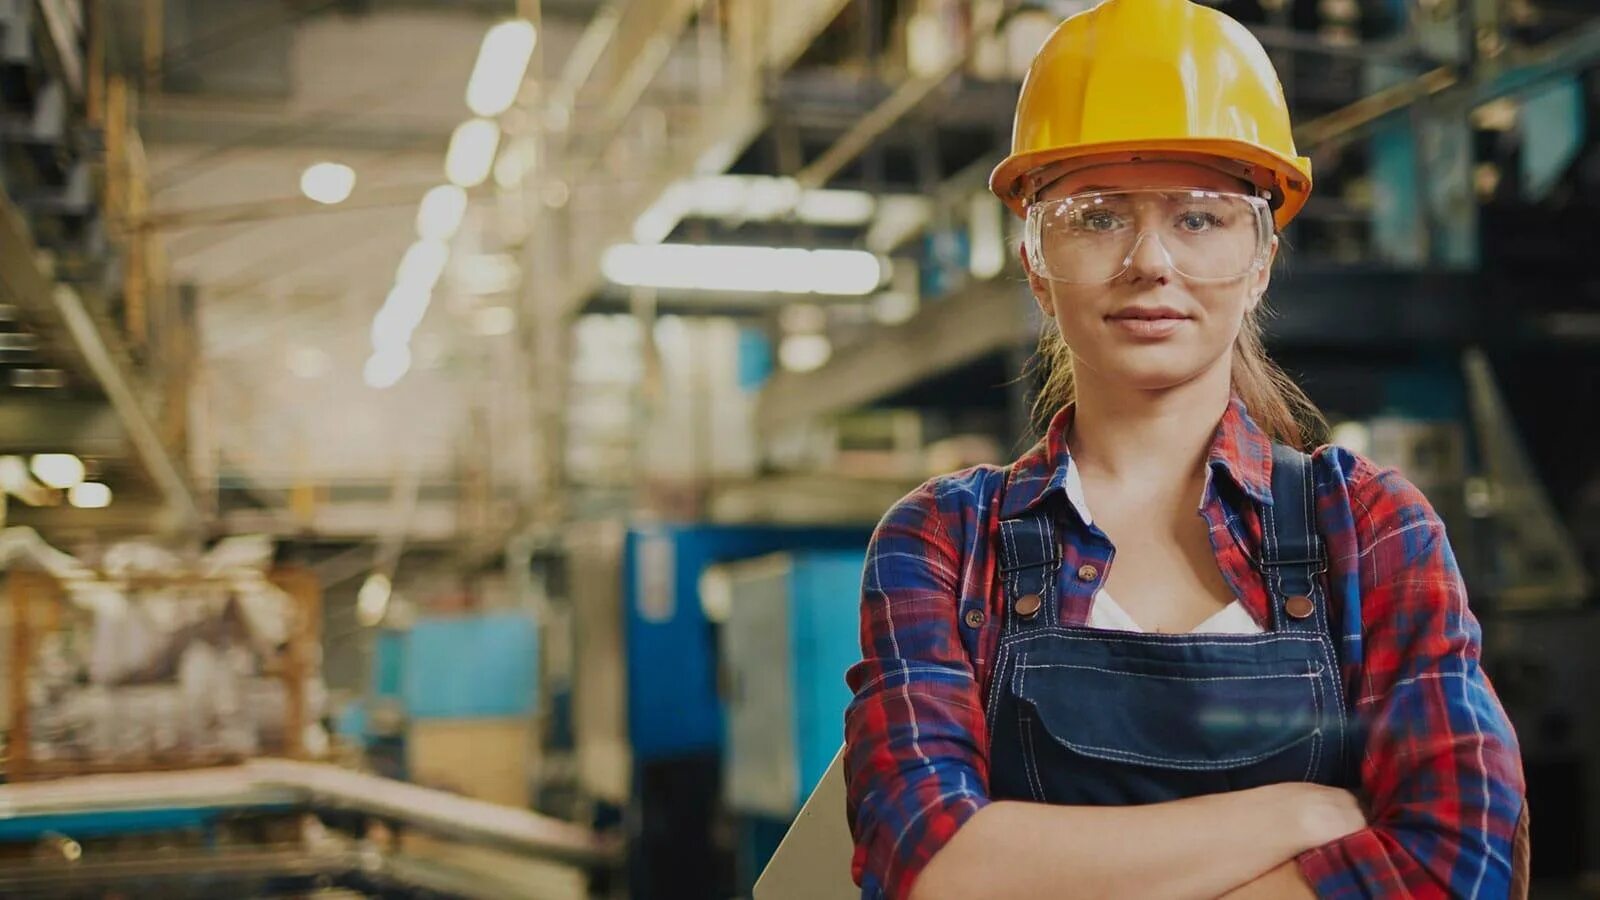 Рабочий персонал на производстве. Женщина Строитель. Женщина на стройке. Девушка на стройке. Инженер в каске на заводе.